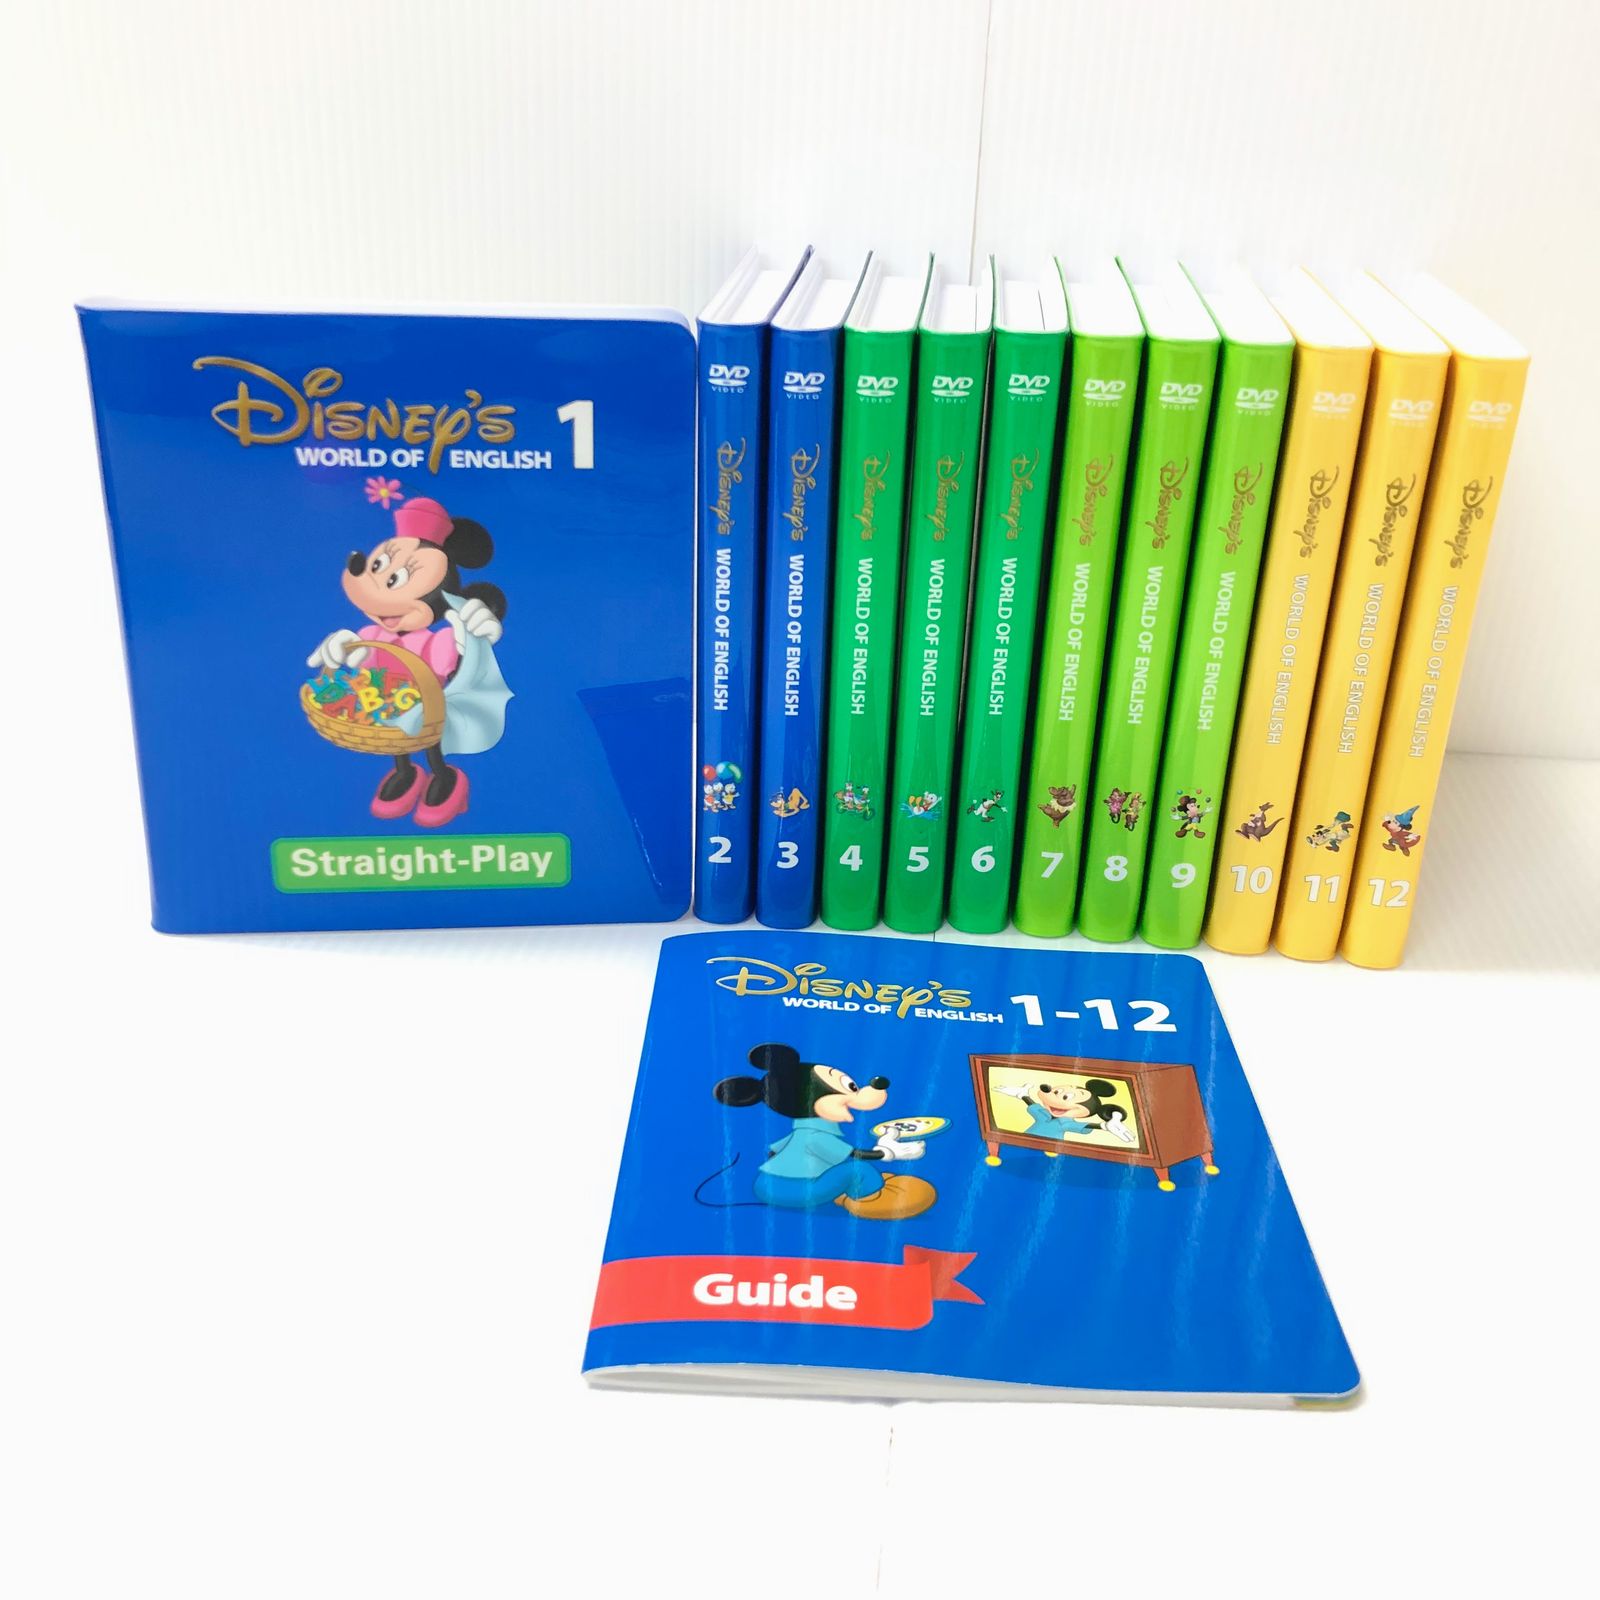 ディズニー英語システム ストレートプレイ DVD 2018年 d-434ワールド